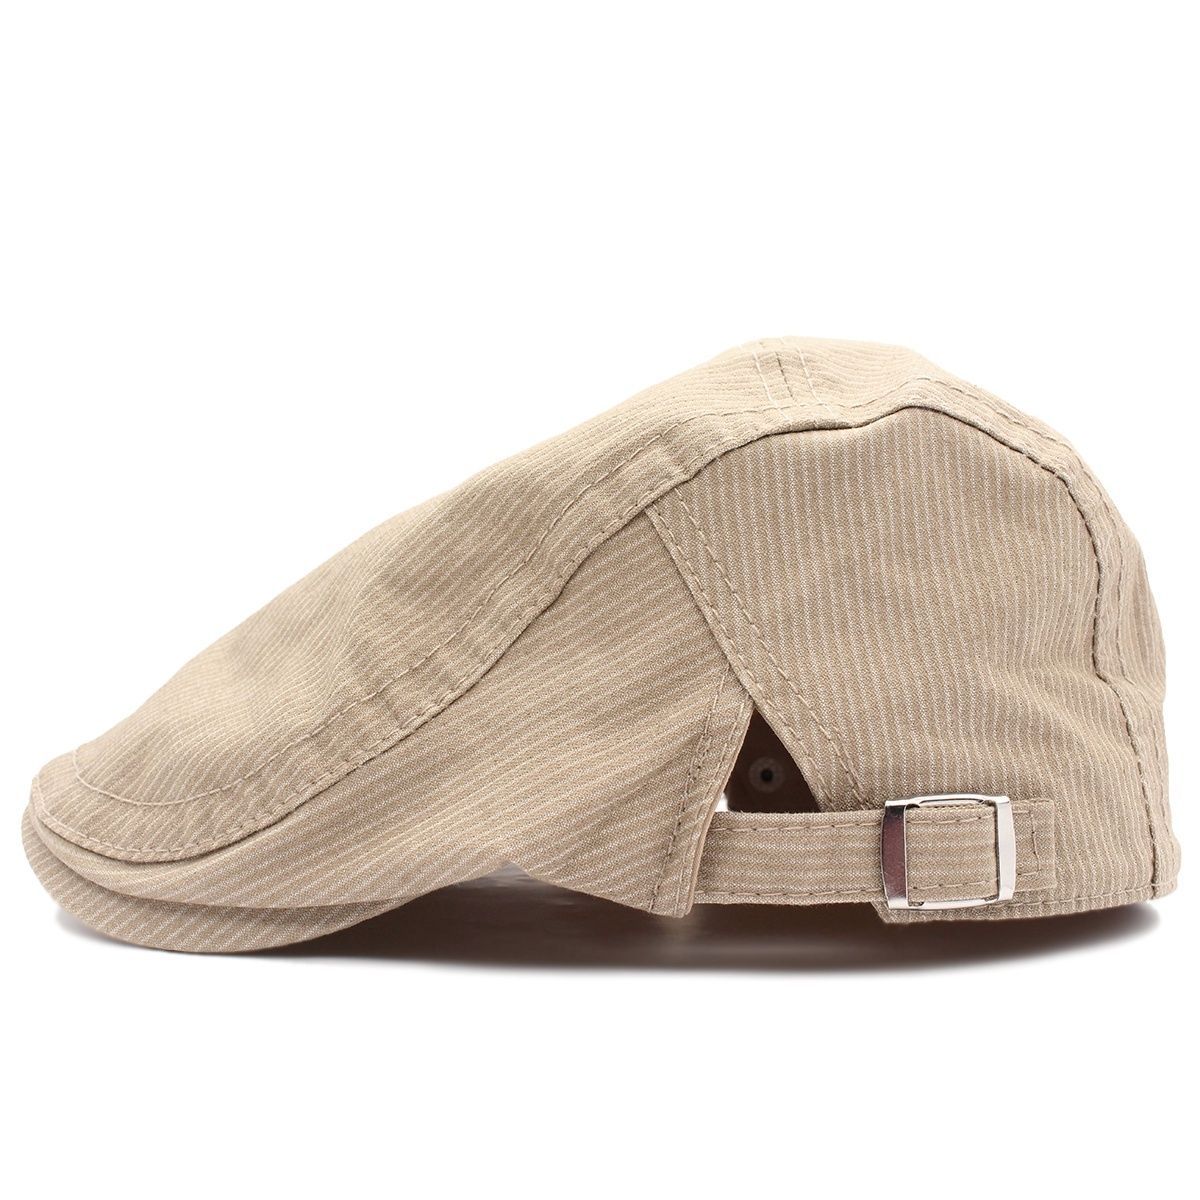 ハンチング帽子 ストライプ柄 綿キャップ 帽子 56~59cm HC172-4 - メルカリ